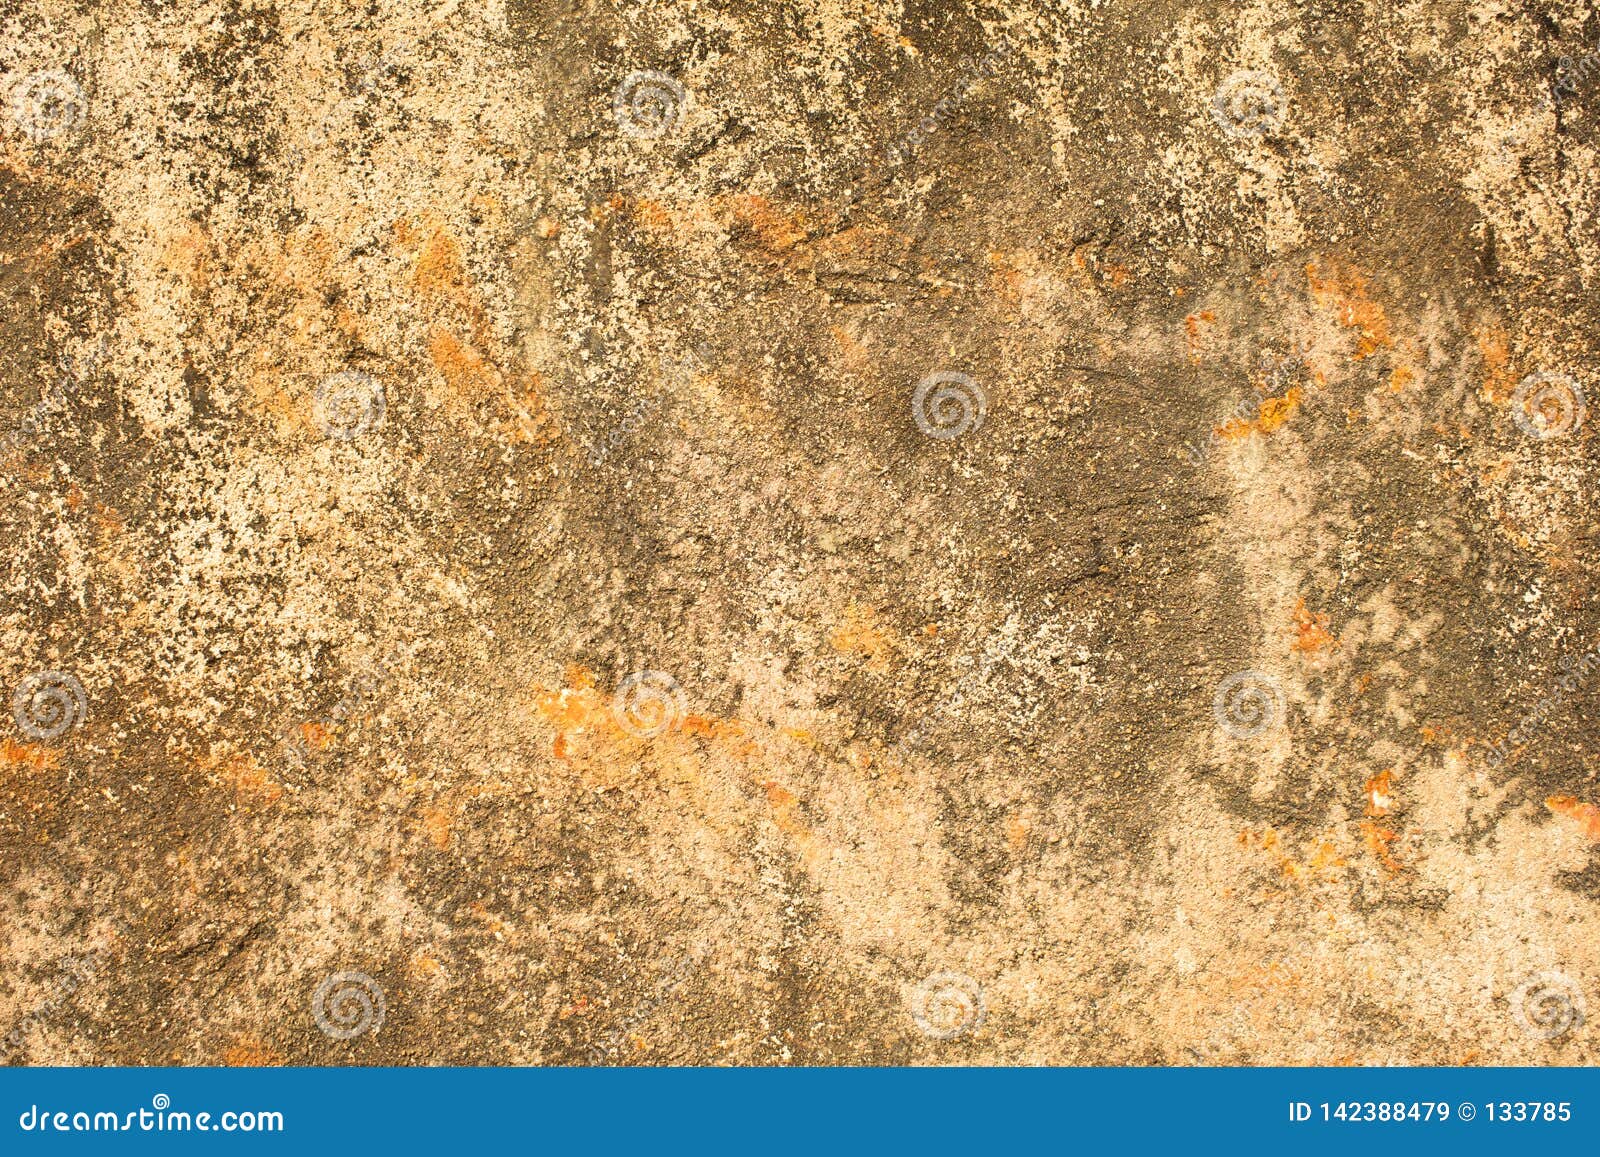 Eine graue weiße gelbe alte zerschlagene Betonmauer mit orange Stellen, tiefen Kratzern und Flecken des Mooses und der Form Raue Oberflächen-Beschaffenheit